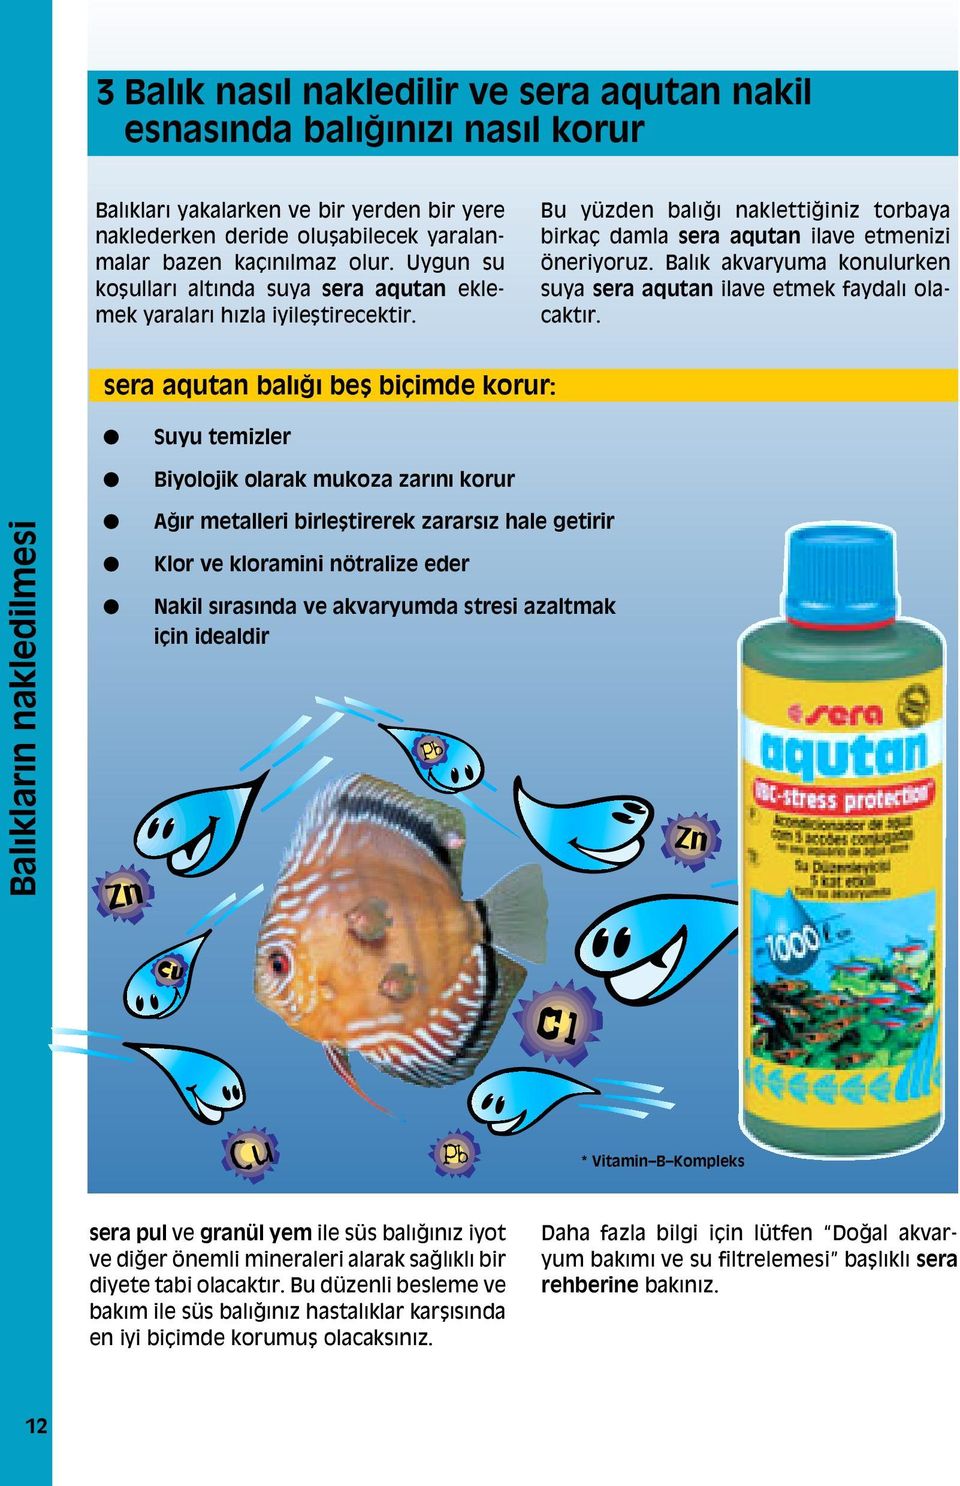 Balık akvaryuma konulurken suya sera aqutan ilave etmek faydalı olacaktır.